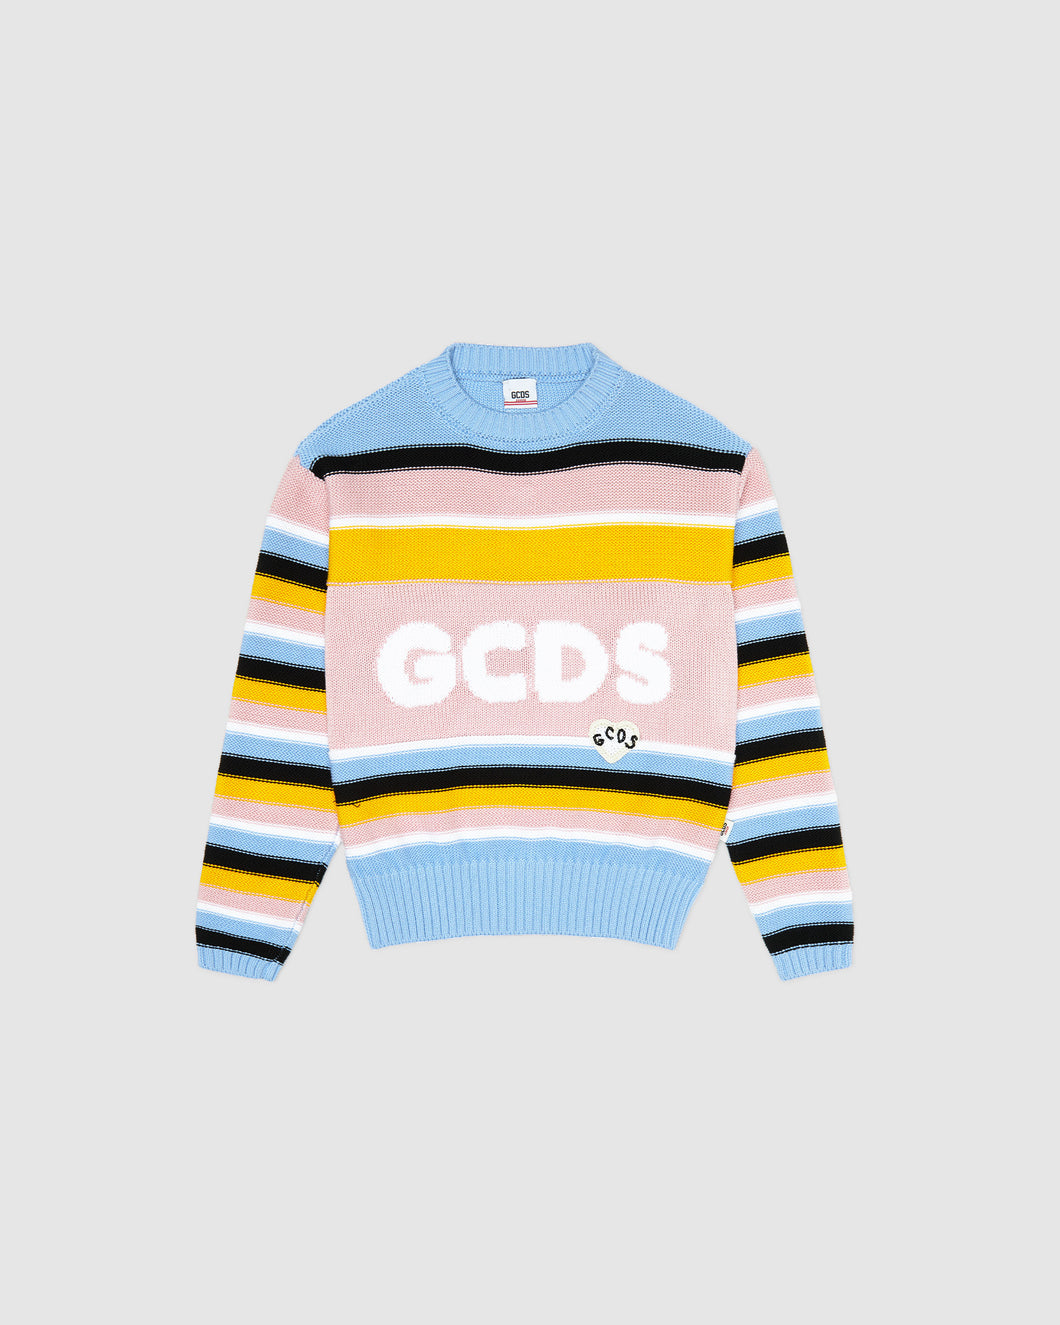 Multicolor knit sweater: Girl Knitwear Multicolor | GCDS